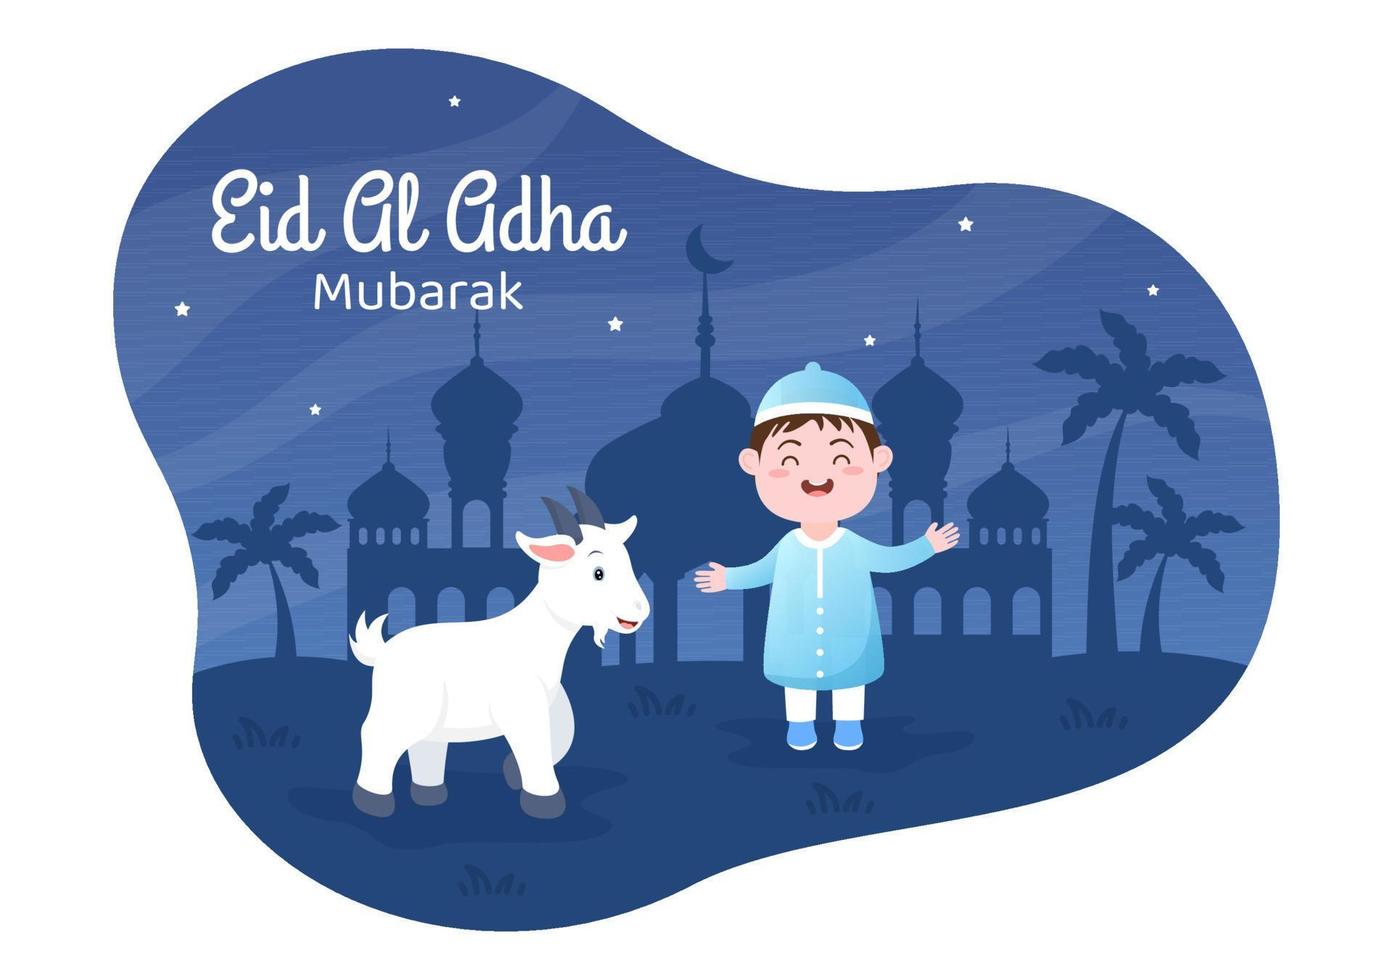 eid al adha sfondo cartone animato illustrazione per la celebrazione dei musulmani con la macellazione di un animale come mucca, capra o cammello e condividerlo vettore